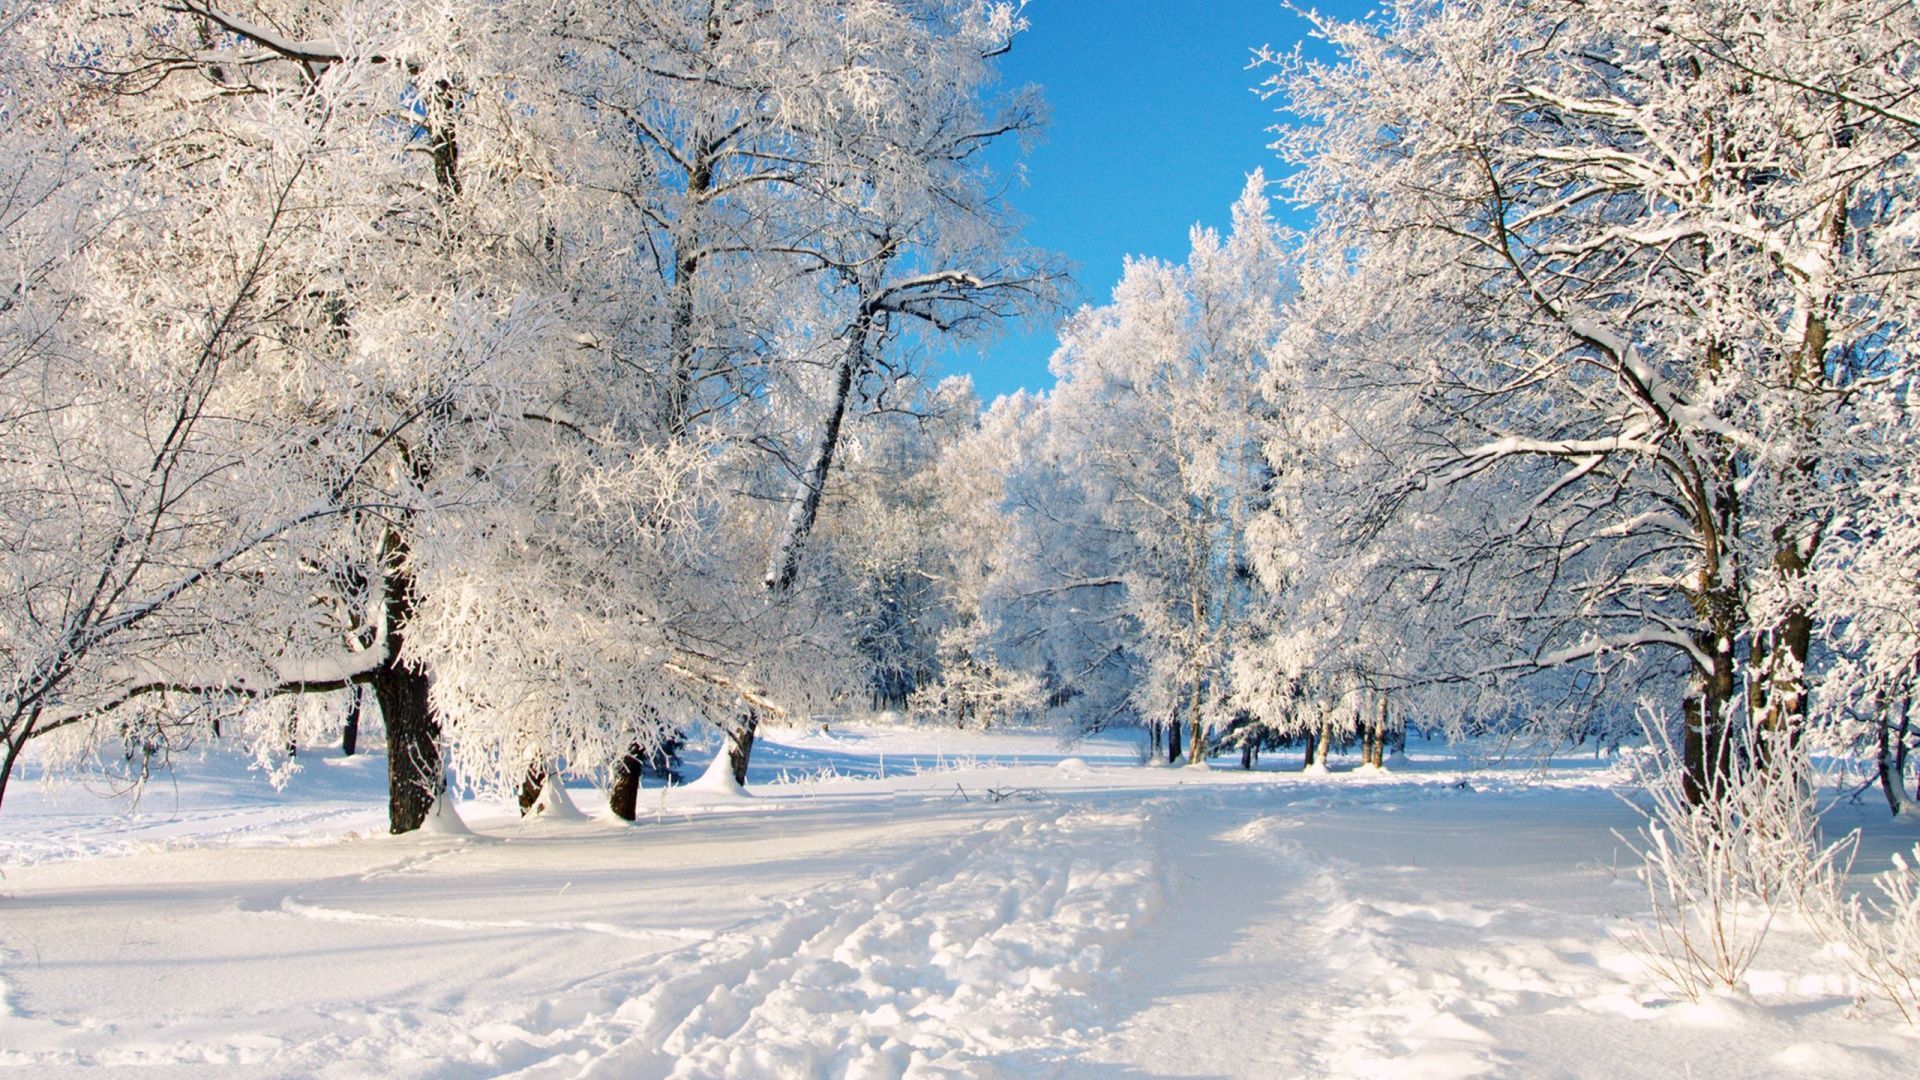 winter scenery. Dreamy Winter Scenery Wallpaper Widescreen. Winter scenery, Winter desktop background, Free winter wallpaper